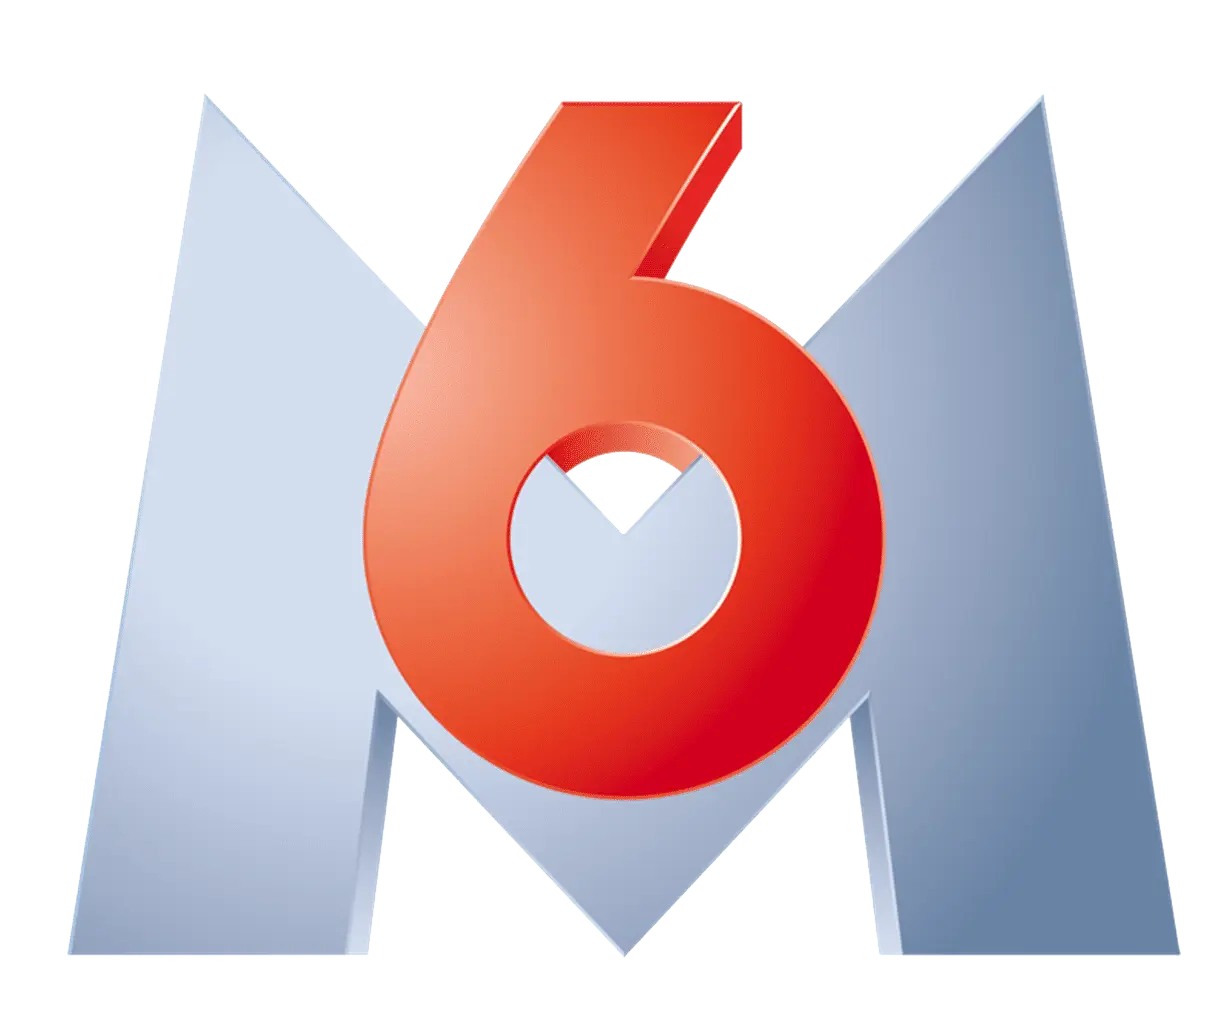 logo M6